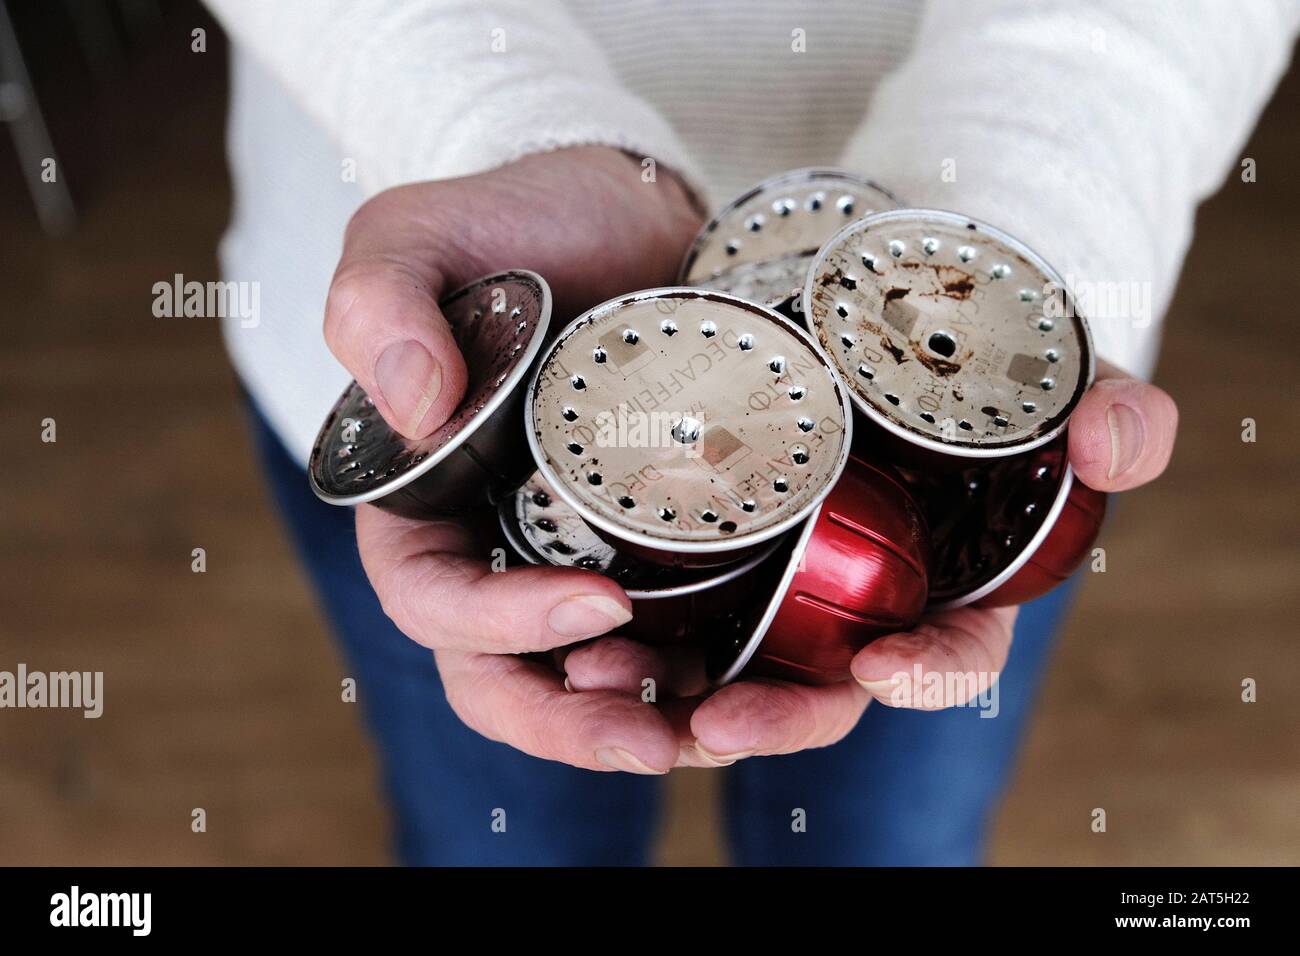 Une femme tenant une poignée de dosettes ou capsules en aluminium d'occasion d'une machine à café Nespresso. Les dosettes sont conservées pour être recyclées Banque D'Images